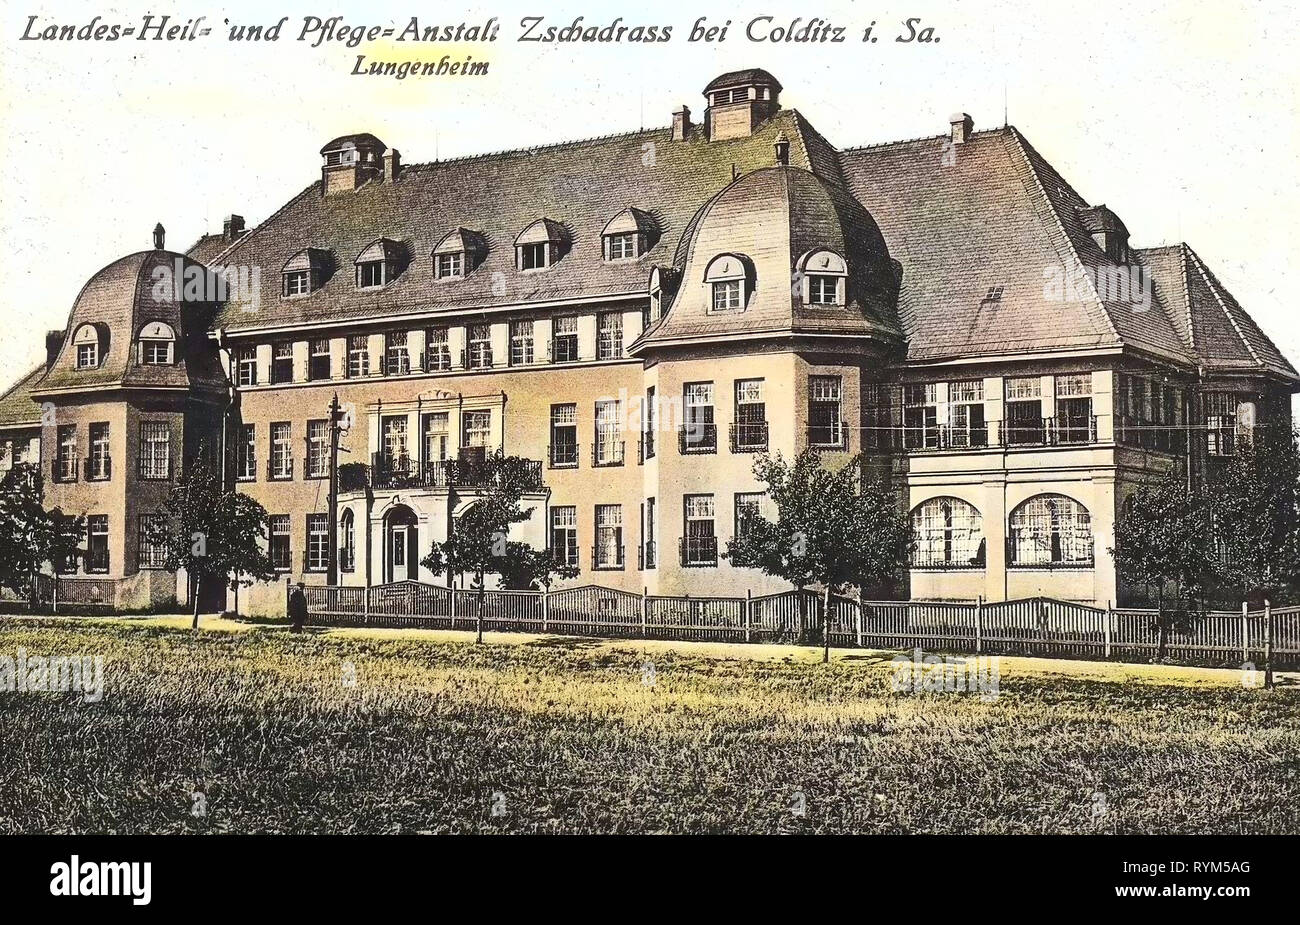 Zschadraß, Pflegeheime in Sachsen, Gastfreundschaft Gebäude in Deutschland, 1920, Landkreis Leipzig, Colditz, Pflegeanstalt, Zschadrass Lungenheim Stockfoto